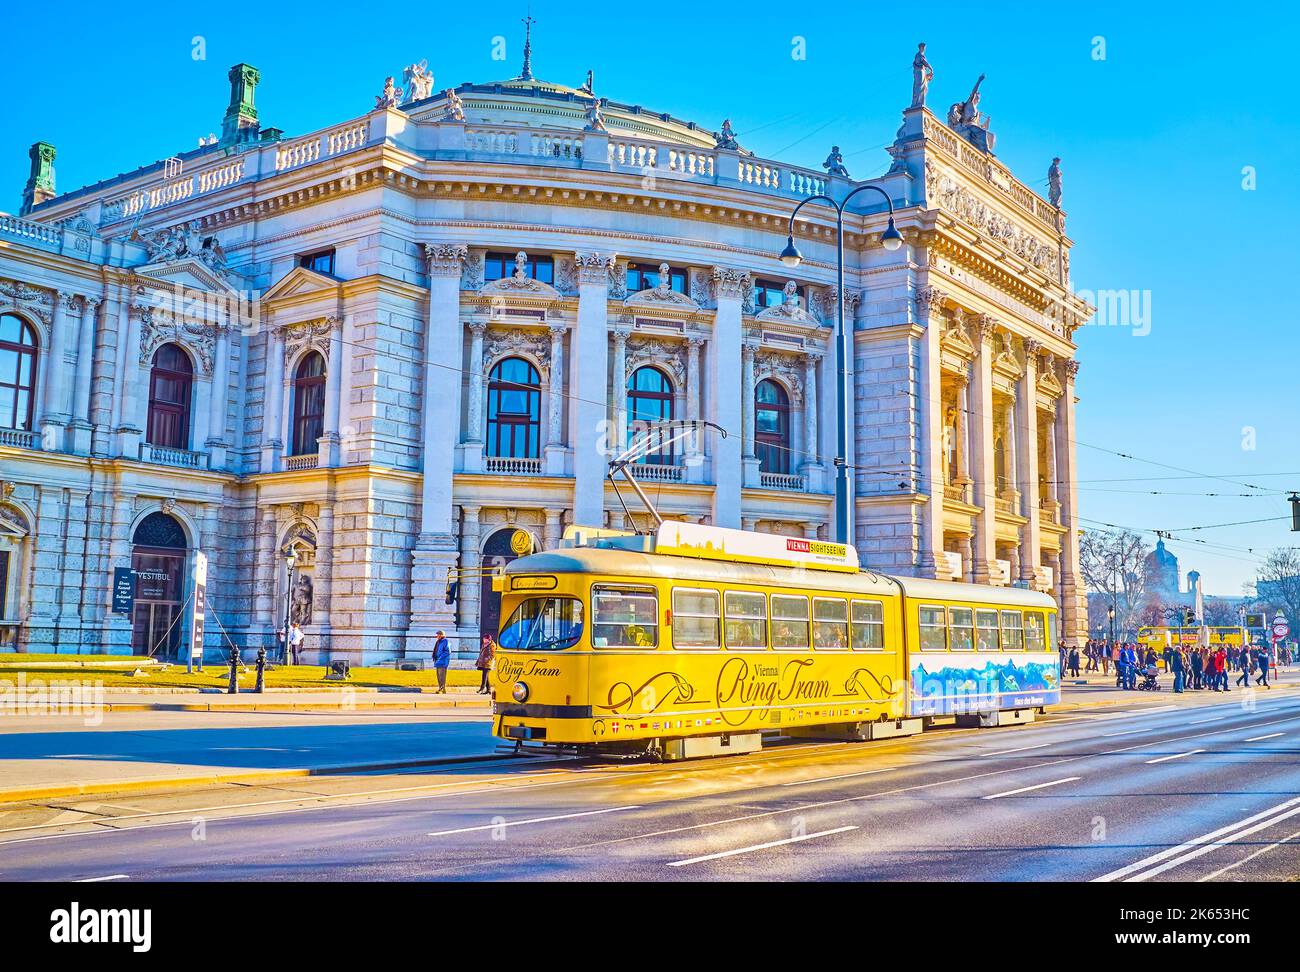 WIEN, ÖSTERREICH - 17. FEBRUAR 2019: Gelbe Oldtimer-Straßenbahn fährt am 17. Februar in Wien, Österreich, am Burgtheater vorbei Stockfoto